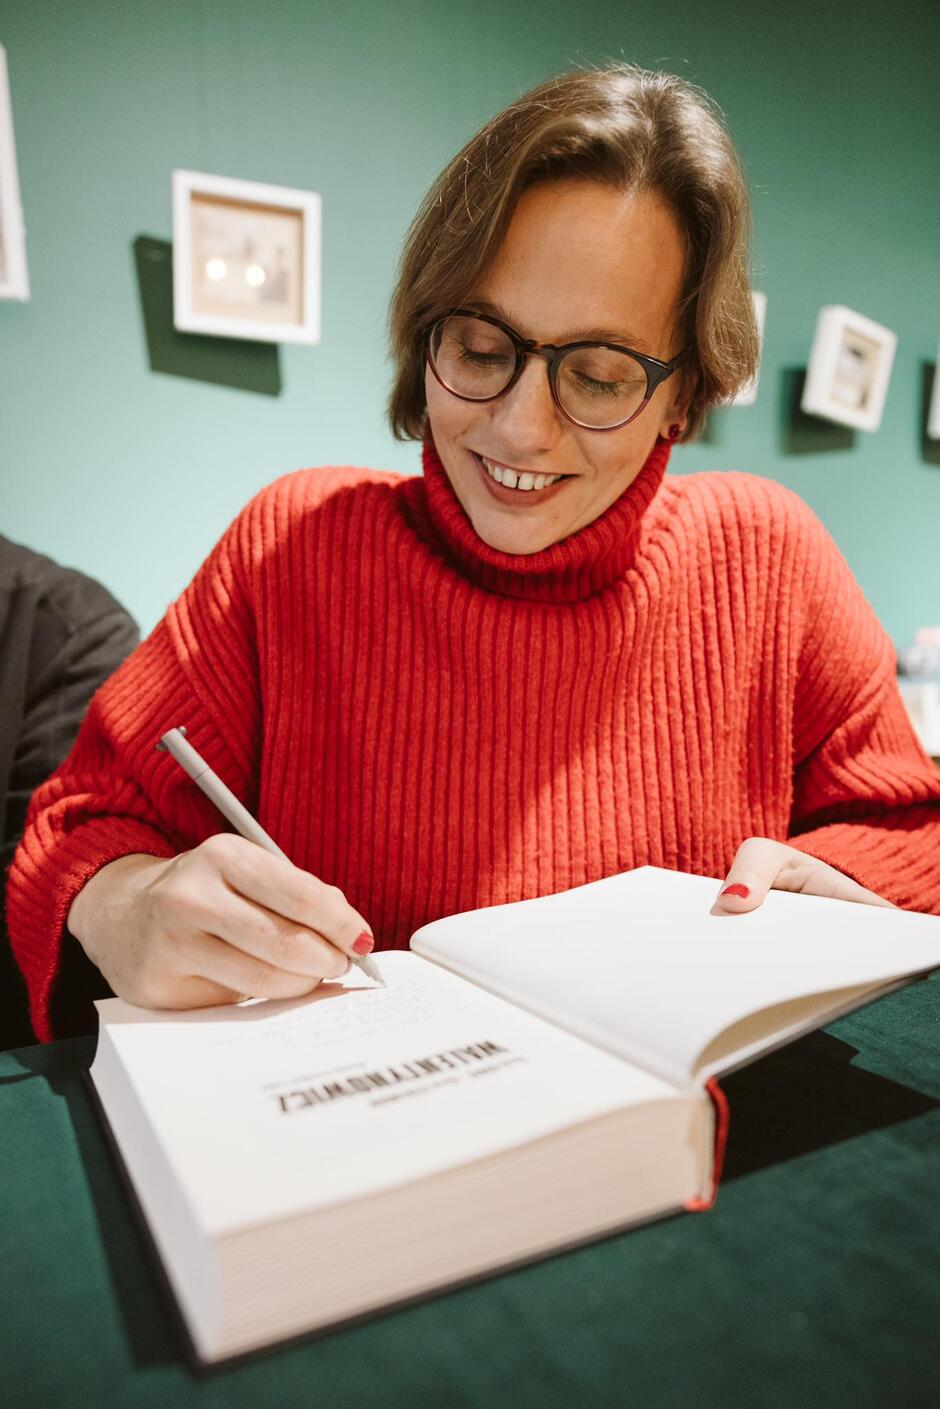 Młoda kobieta w okularach pochyla się nad książką. Trzyma w ręku długopis i pisze coś na pierwszej stronie książki. Jest ubrana w czerwony golf i uśmiecha się.